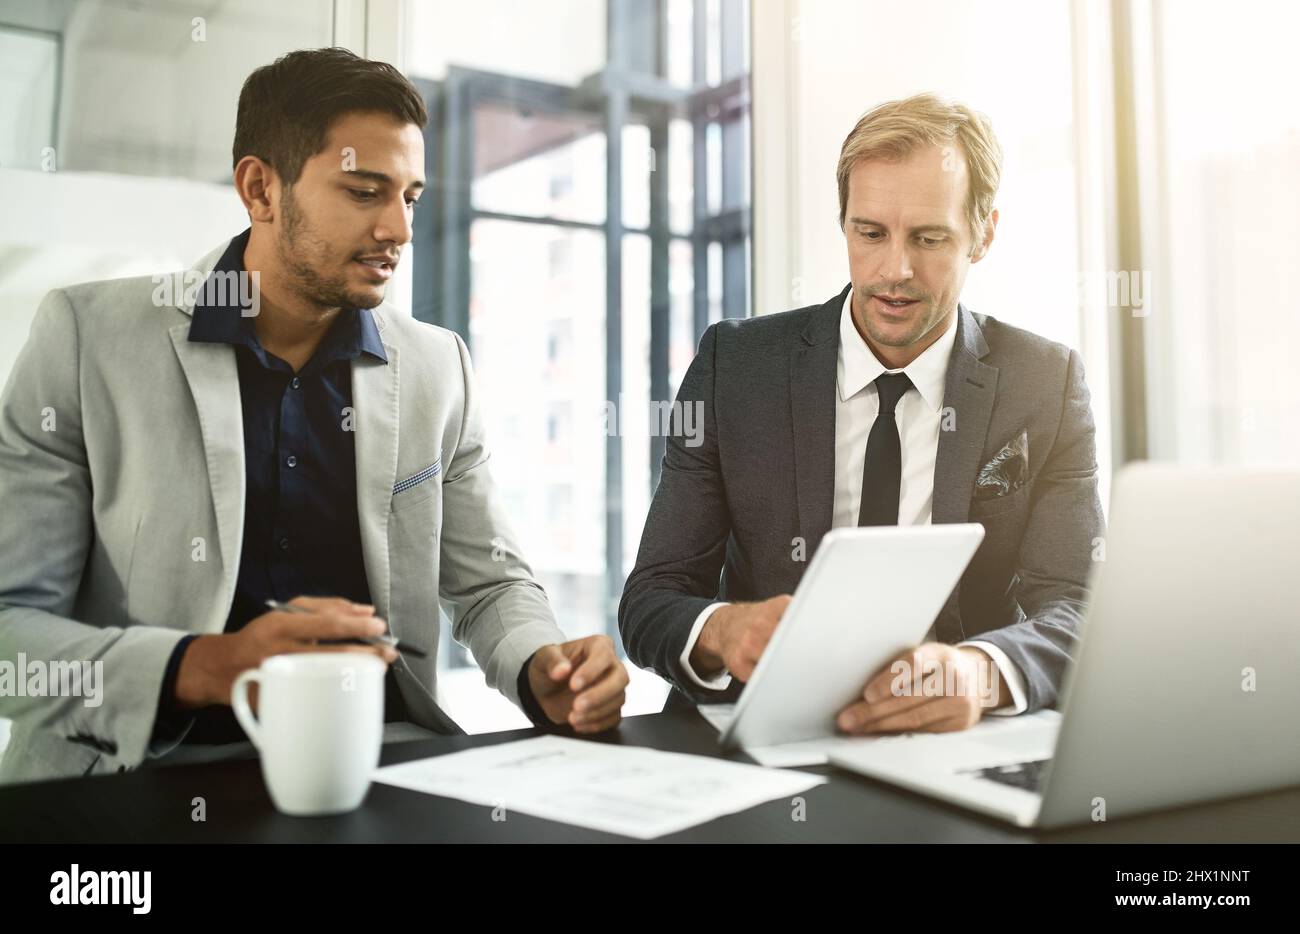 La technologie leur permet d'atteindre de nouveaux marchés économiques. Photo de deux hommes d'affaires ayant une discussion dans un bureau. Banque D'Images